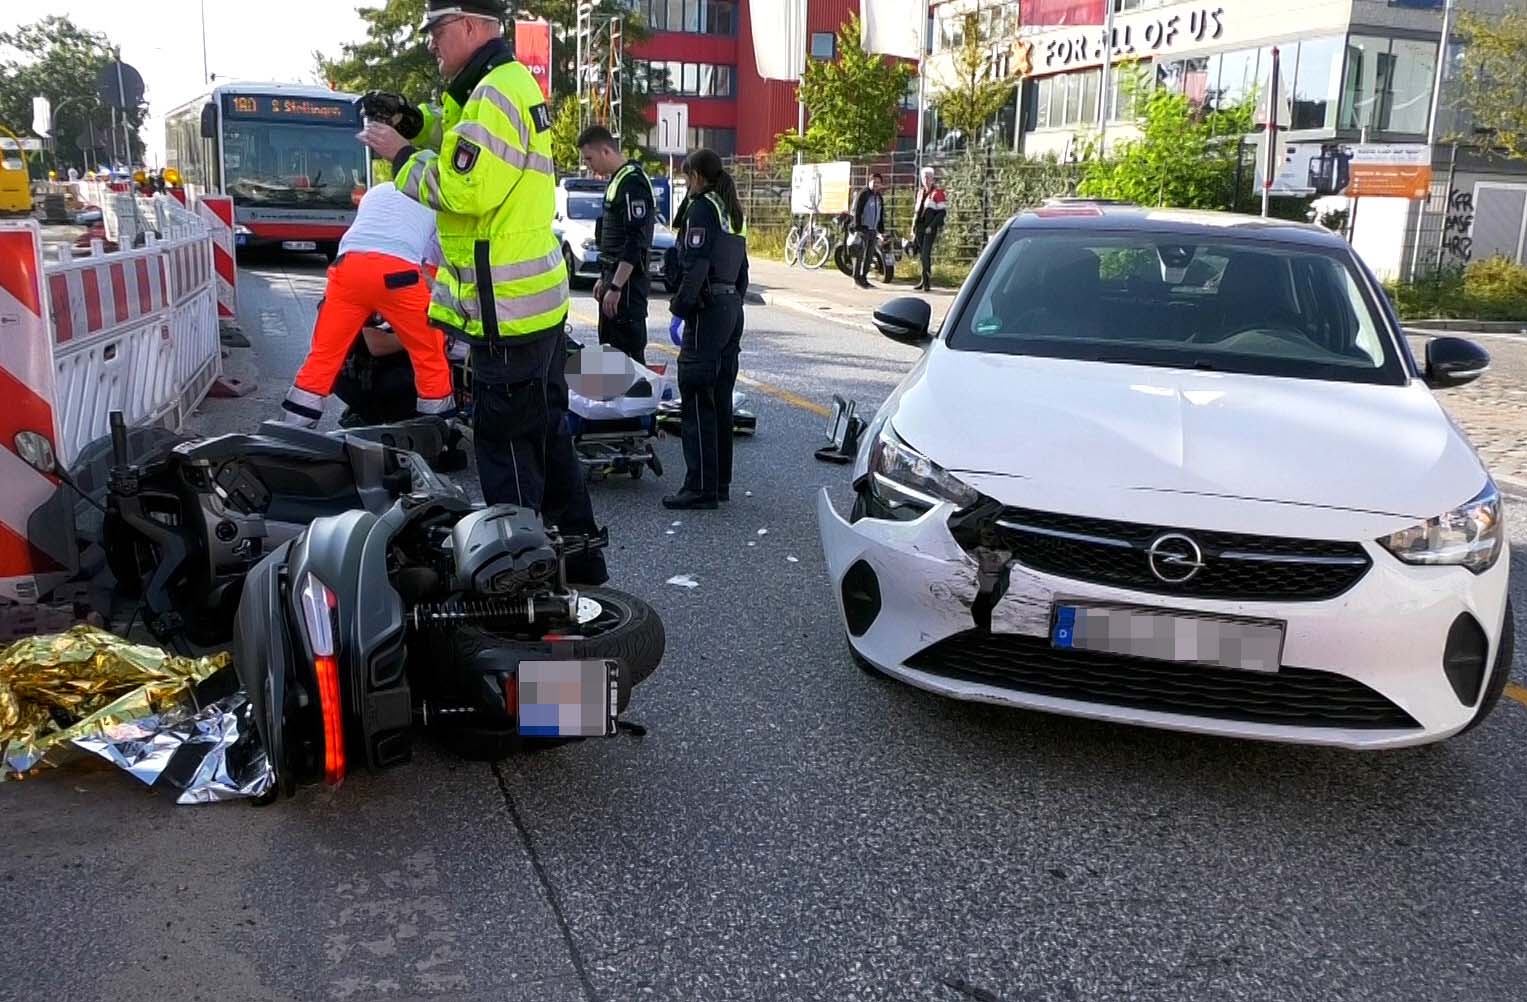 Moped-Fahrer bei Unfall in Hamburg schwer verletzt